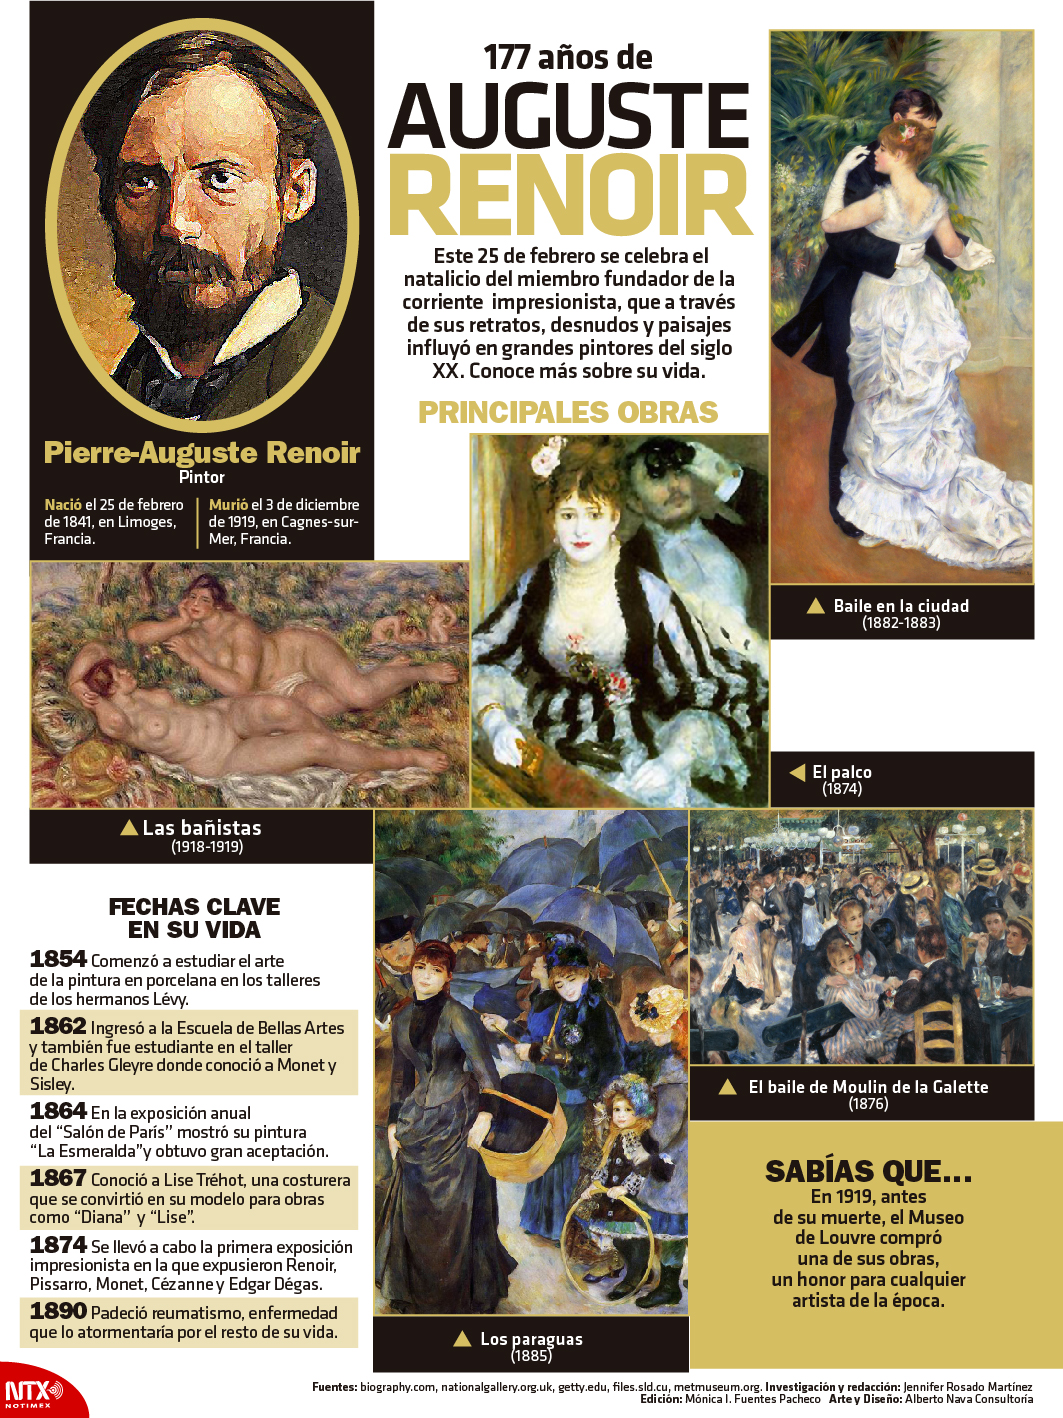 177 aos de Auguste Renoir